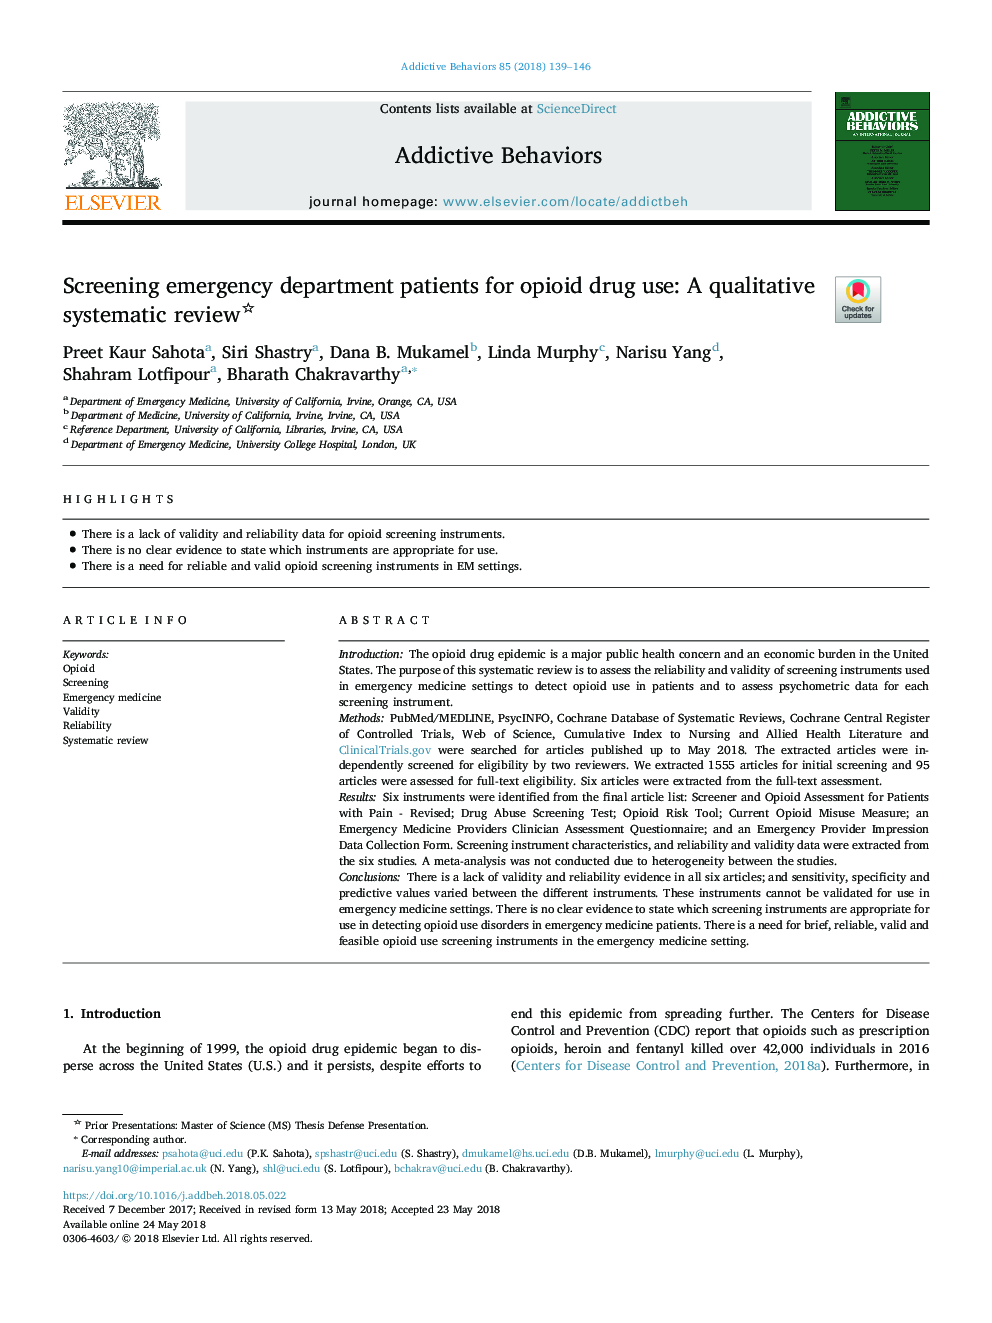 غربالگری بیماران بخش اورژانس برای مصرف مواد مخدر: یک بررسی سیستماتیک کیفی 